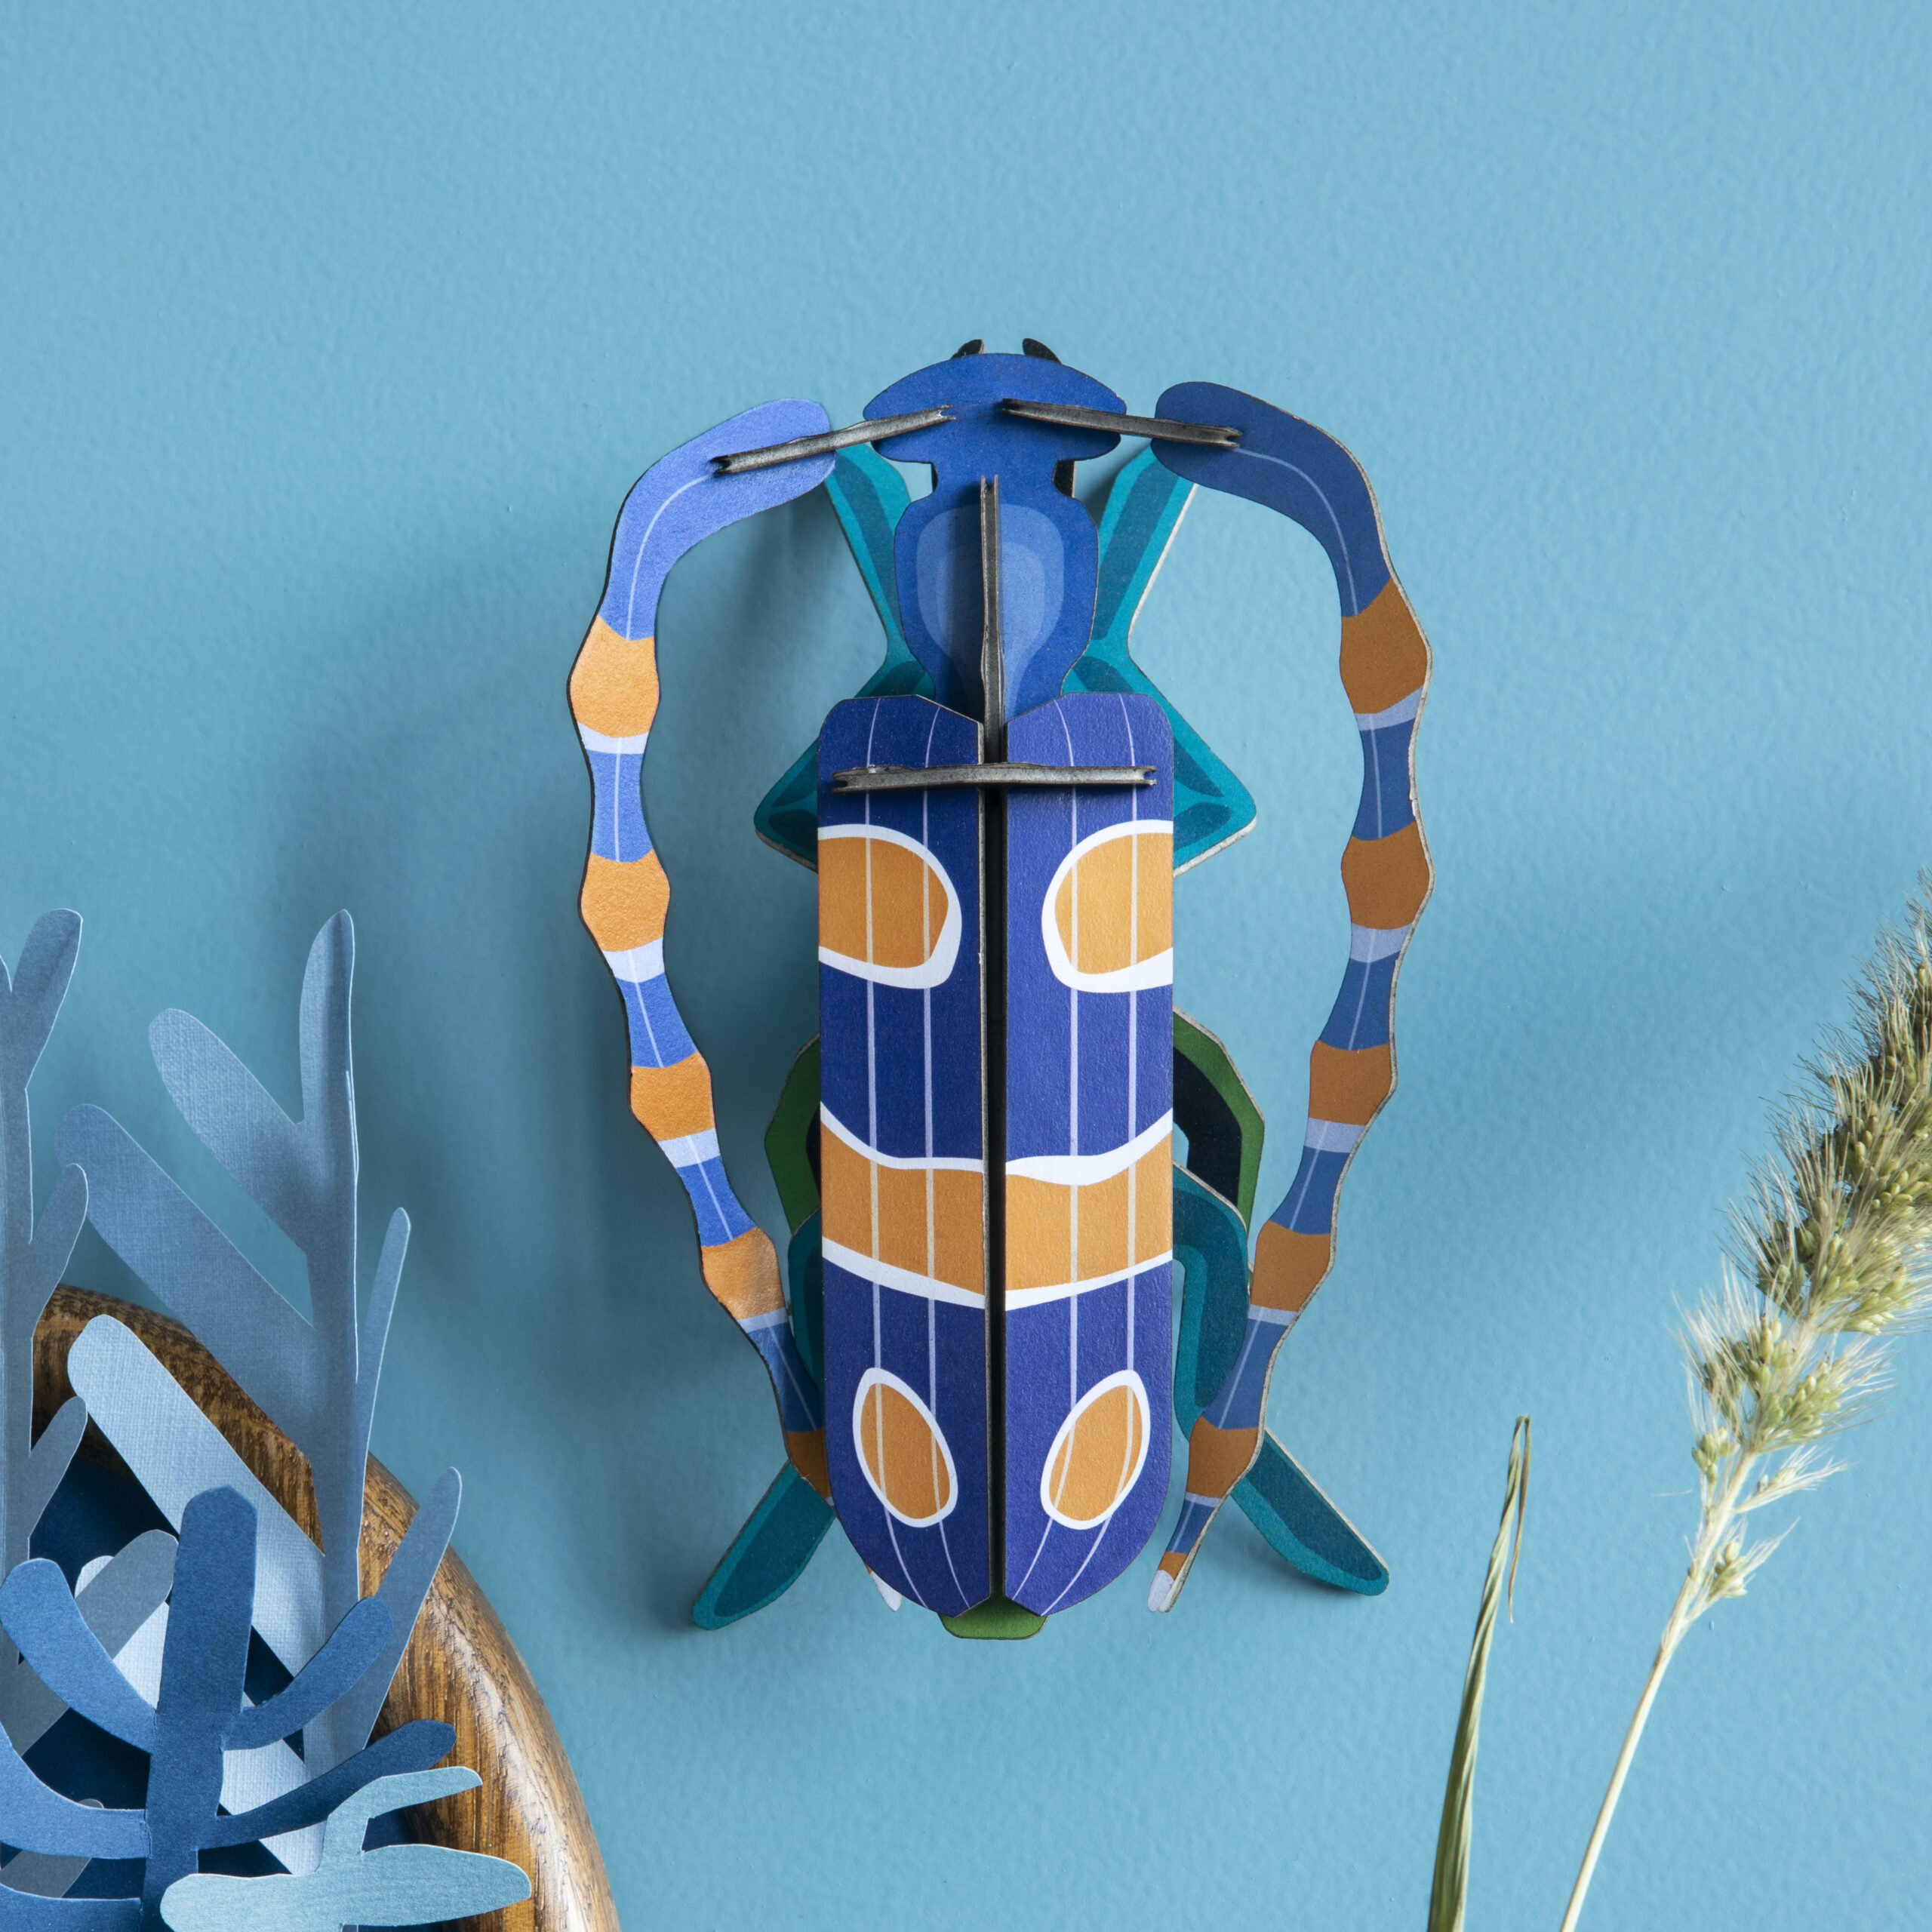 Rosalie Beetle - gemusterter Kaefer aus Papier in 3D als Wanddekoration von der Firma studio Roof an blauer Wand